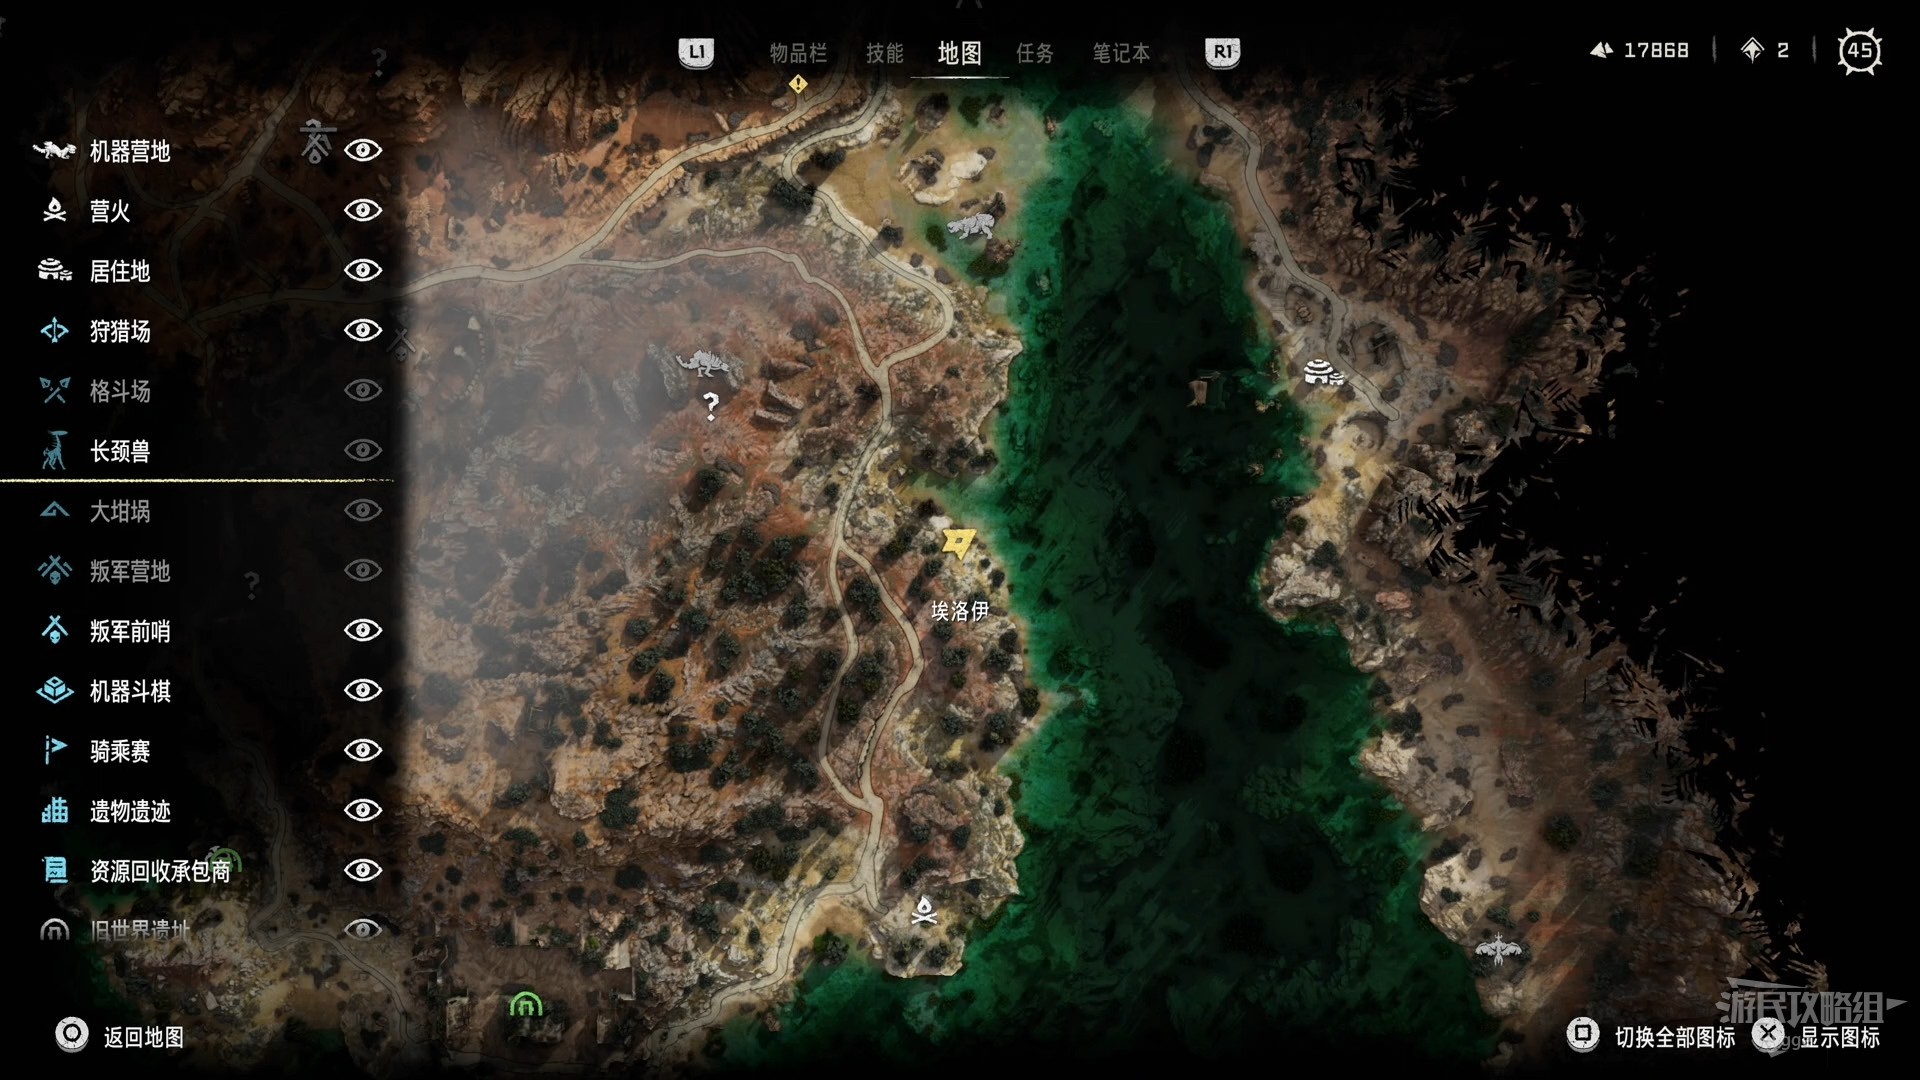 《地平线西之绝境》新手入门攻略 基本操作、玩法及系统介绍_界面介绍 - 第6张